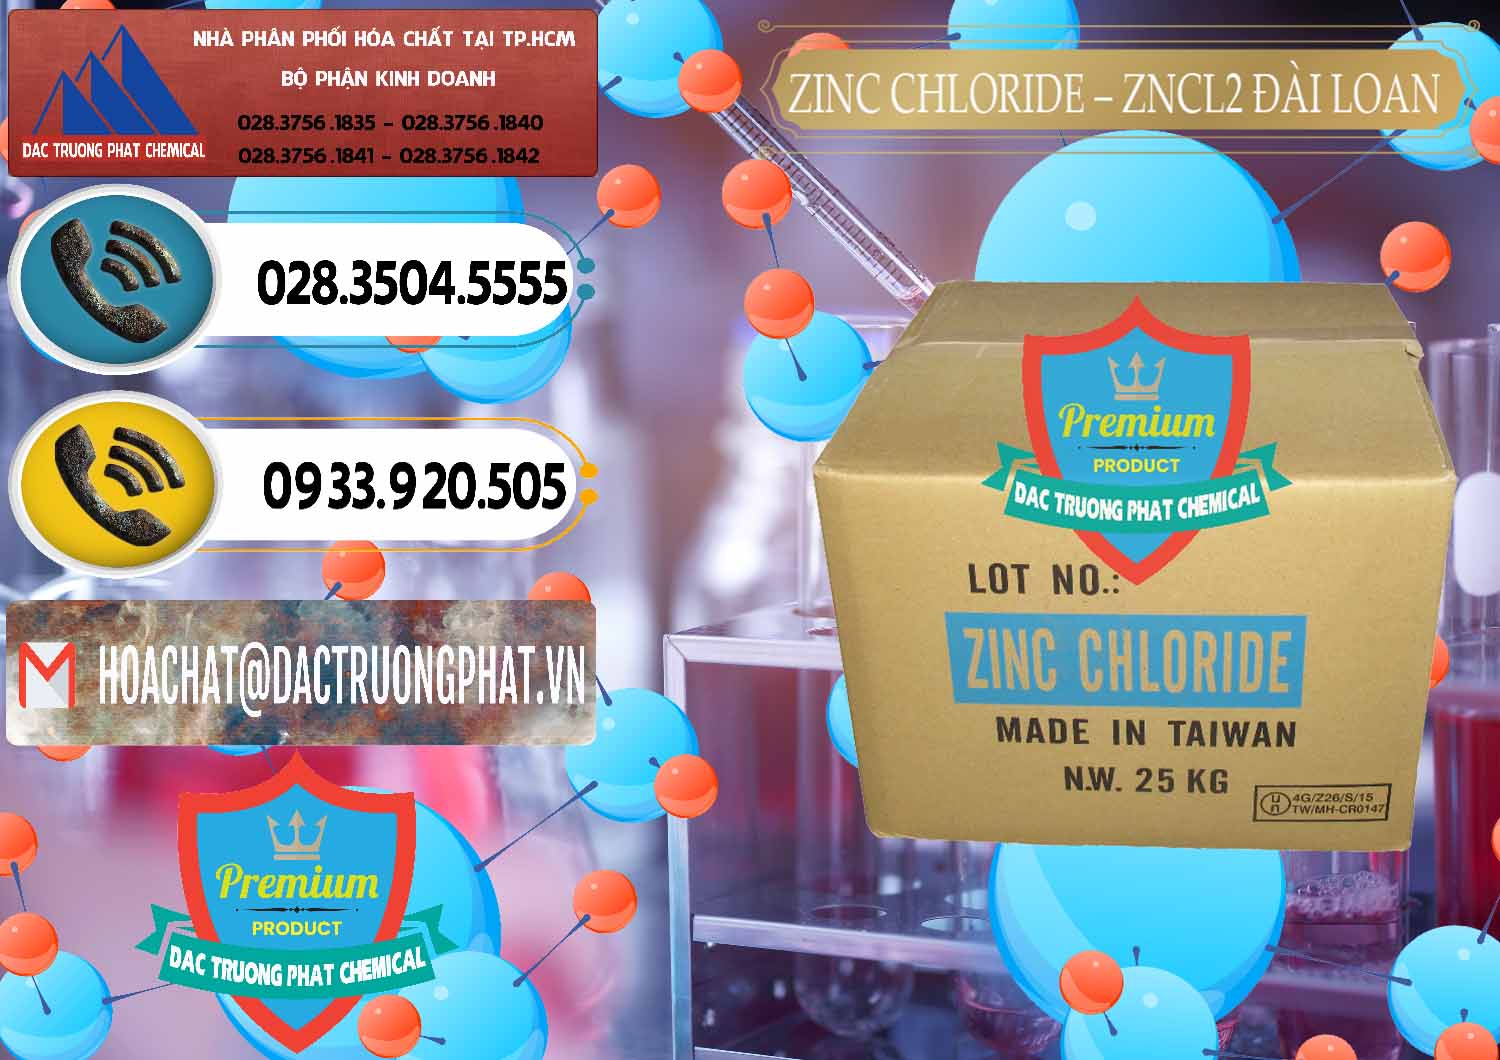 Công ty bán _ cung ứng Zinc Chloride - ZNCL2 96% Đài Loan Taiwan - 0178 - Công ty phân phối ( cung cấp ) hóa chất tại TP.HCM - hoachatdetnhuom.vn